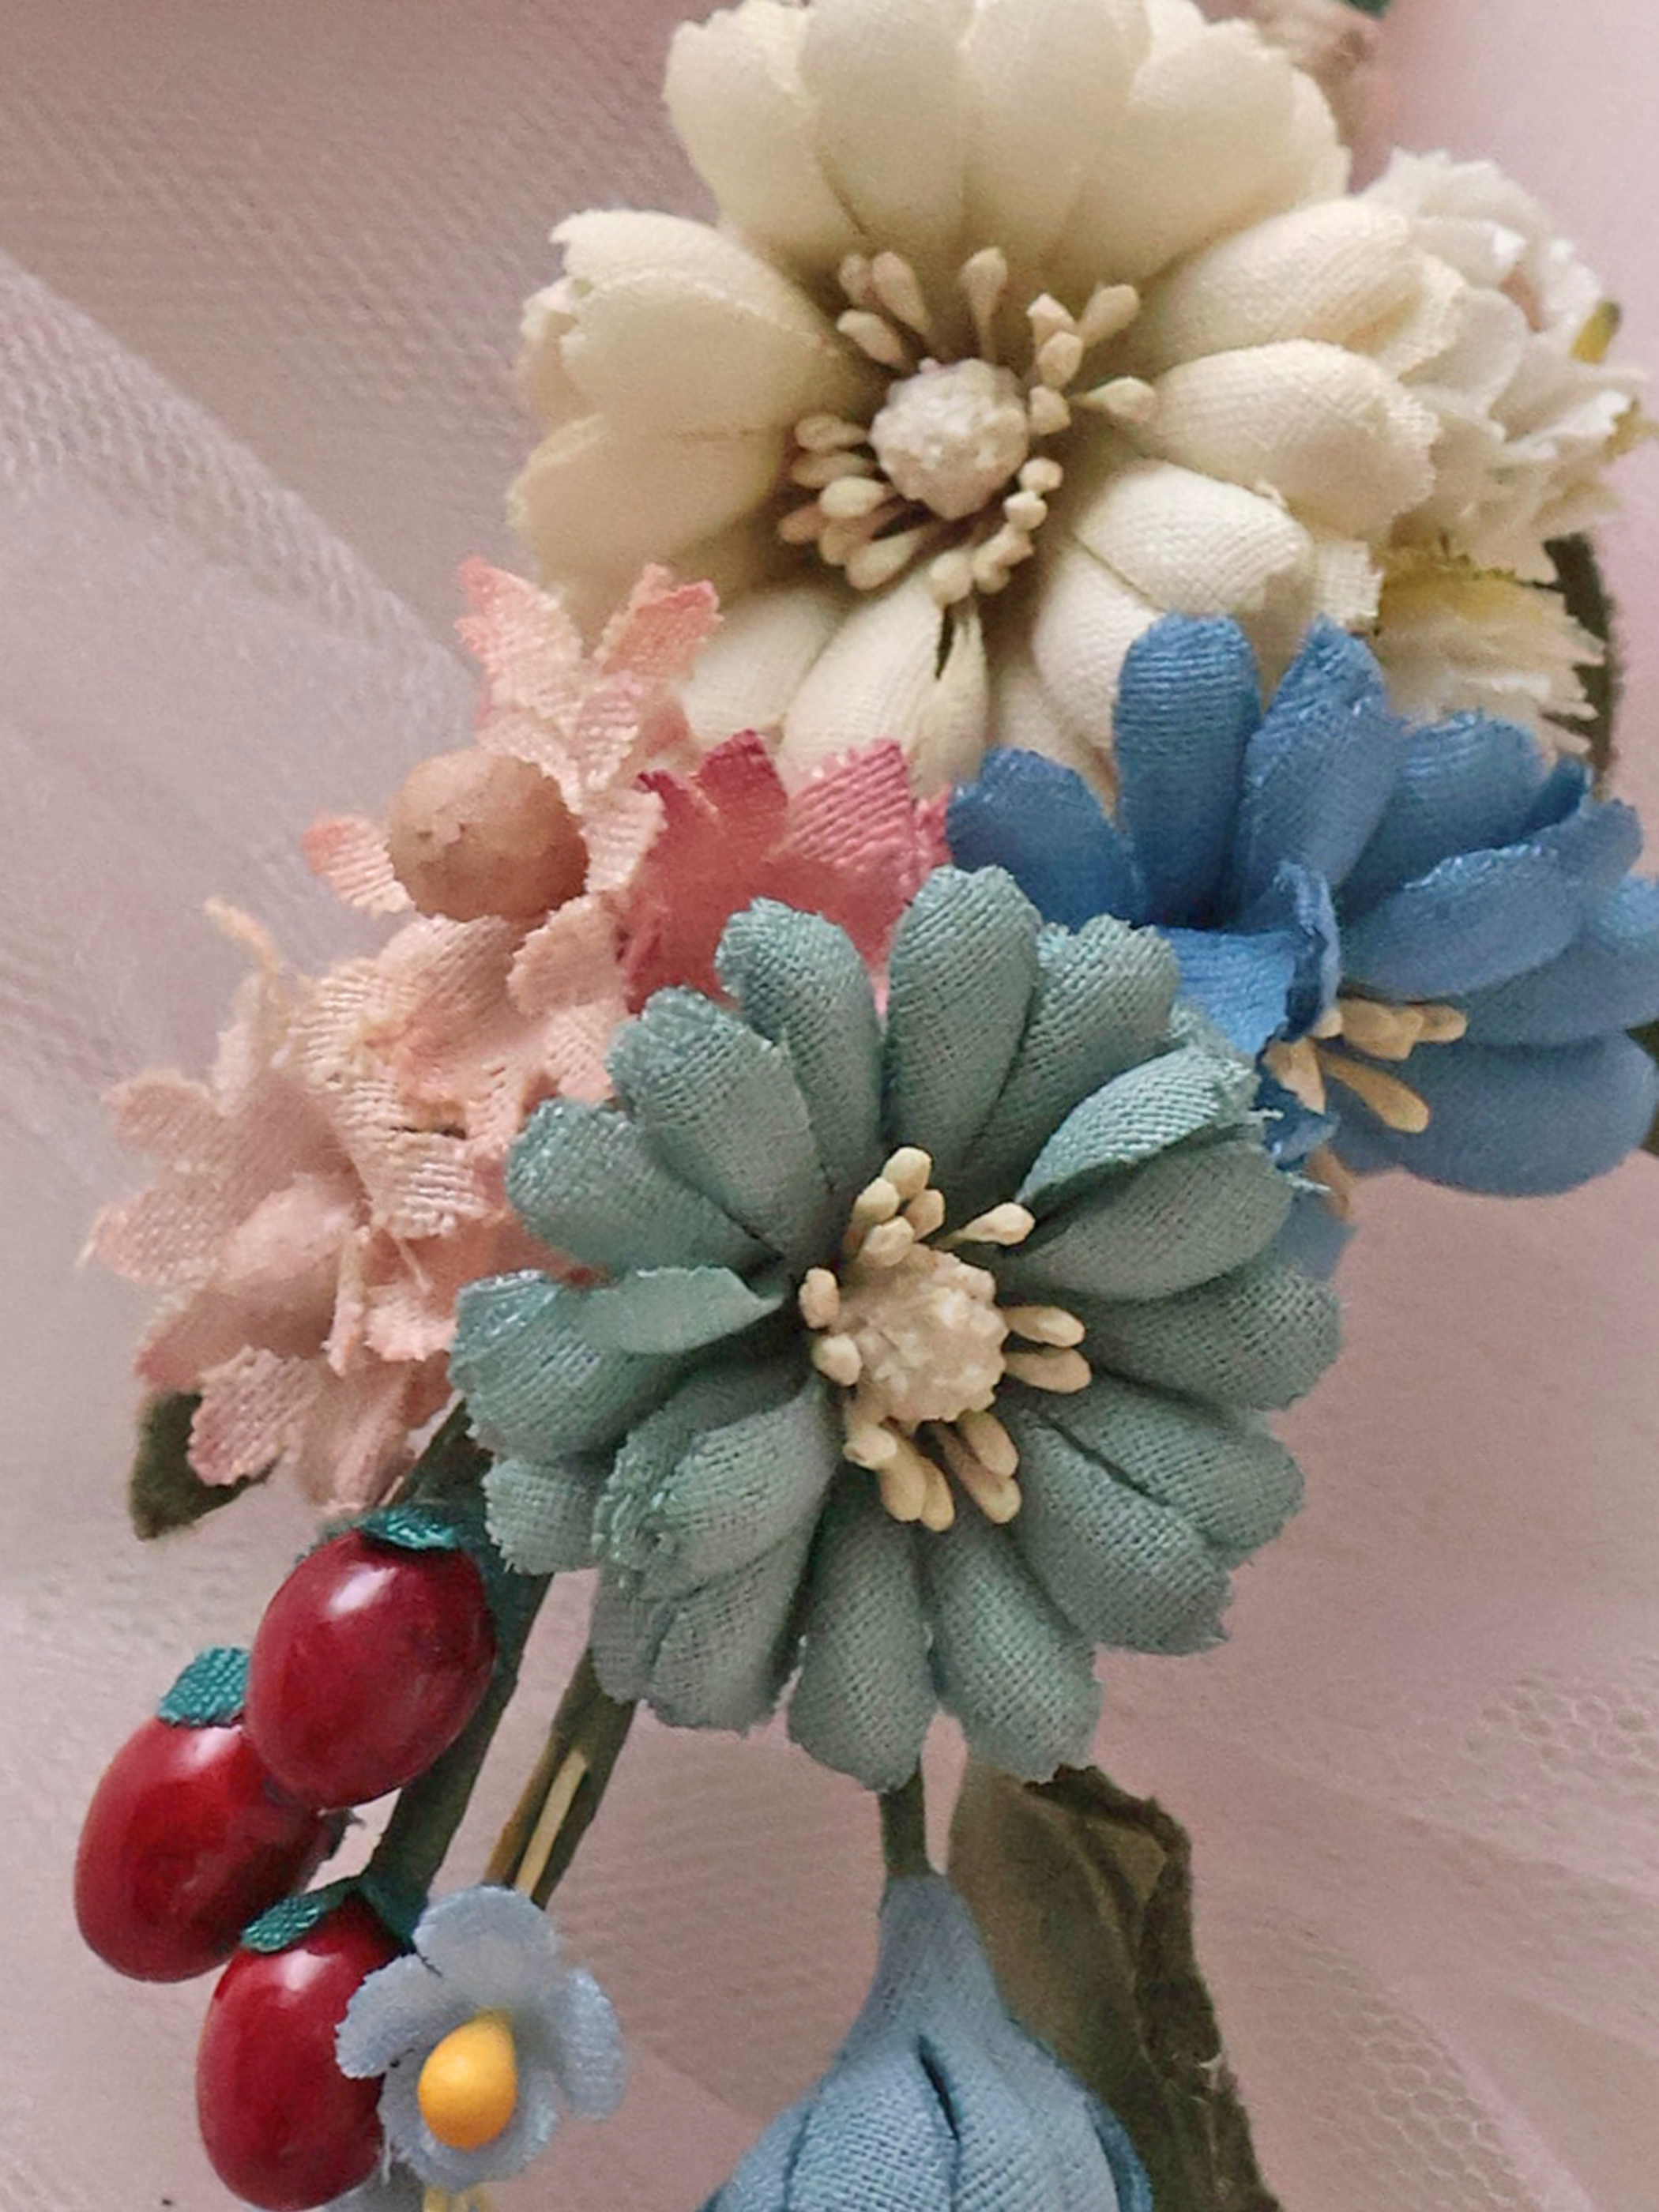 bouquet earrings